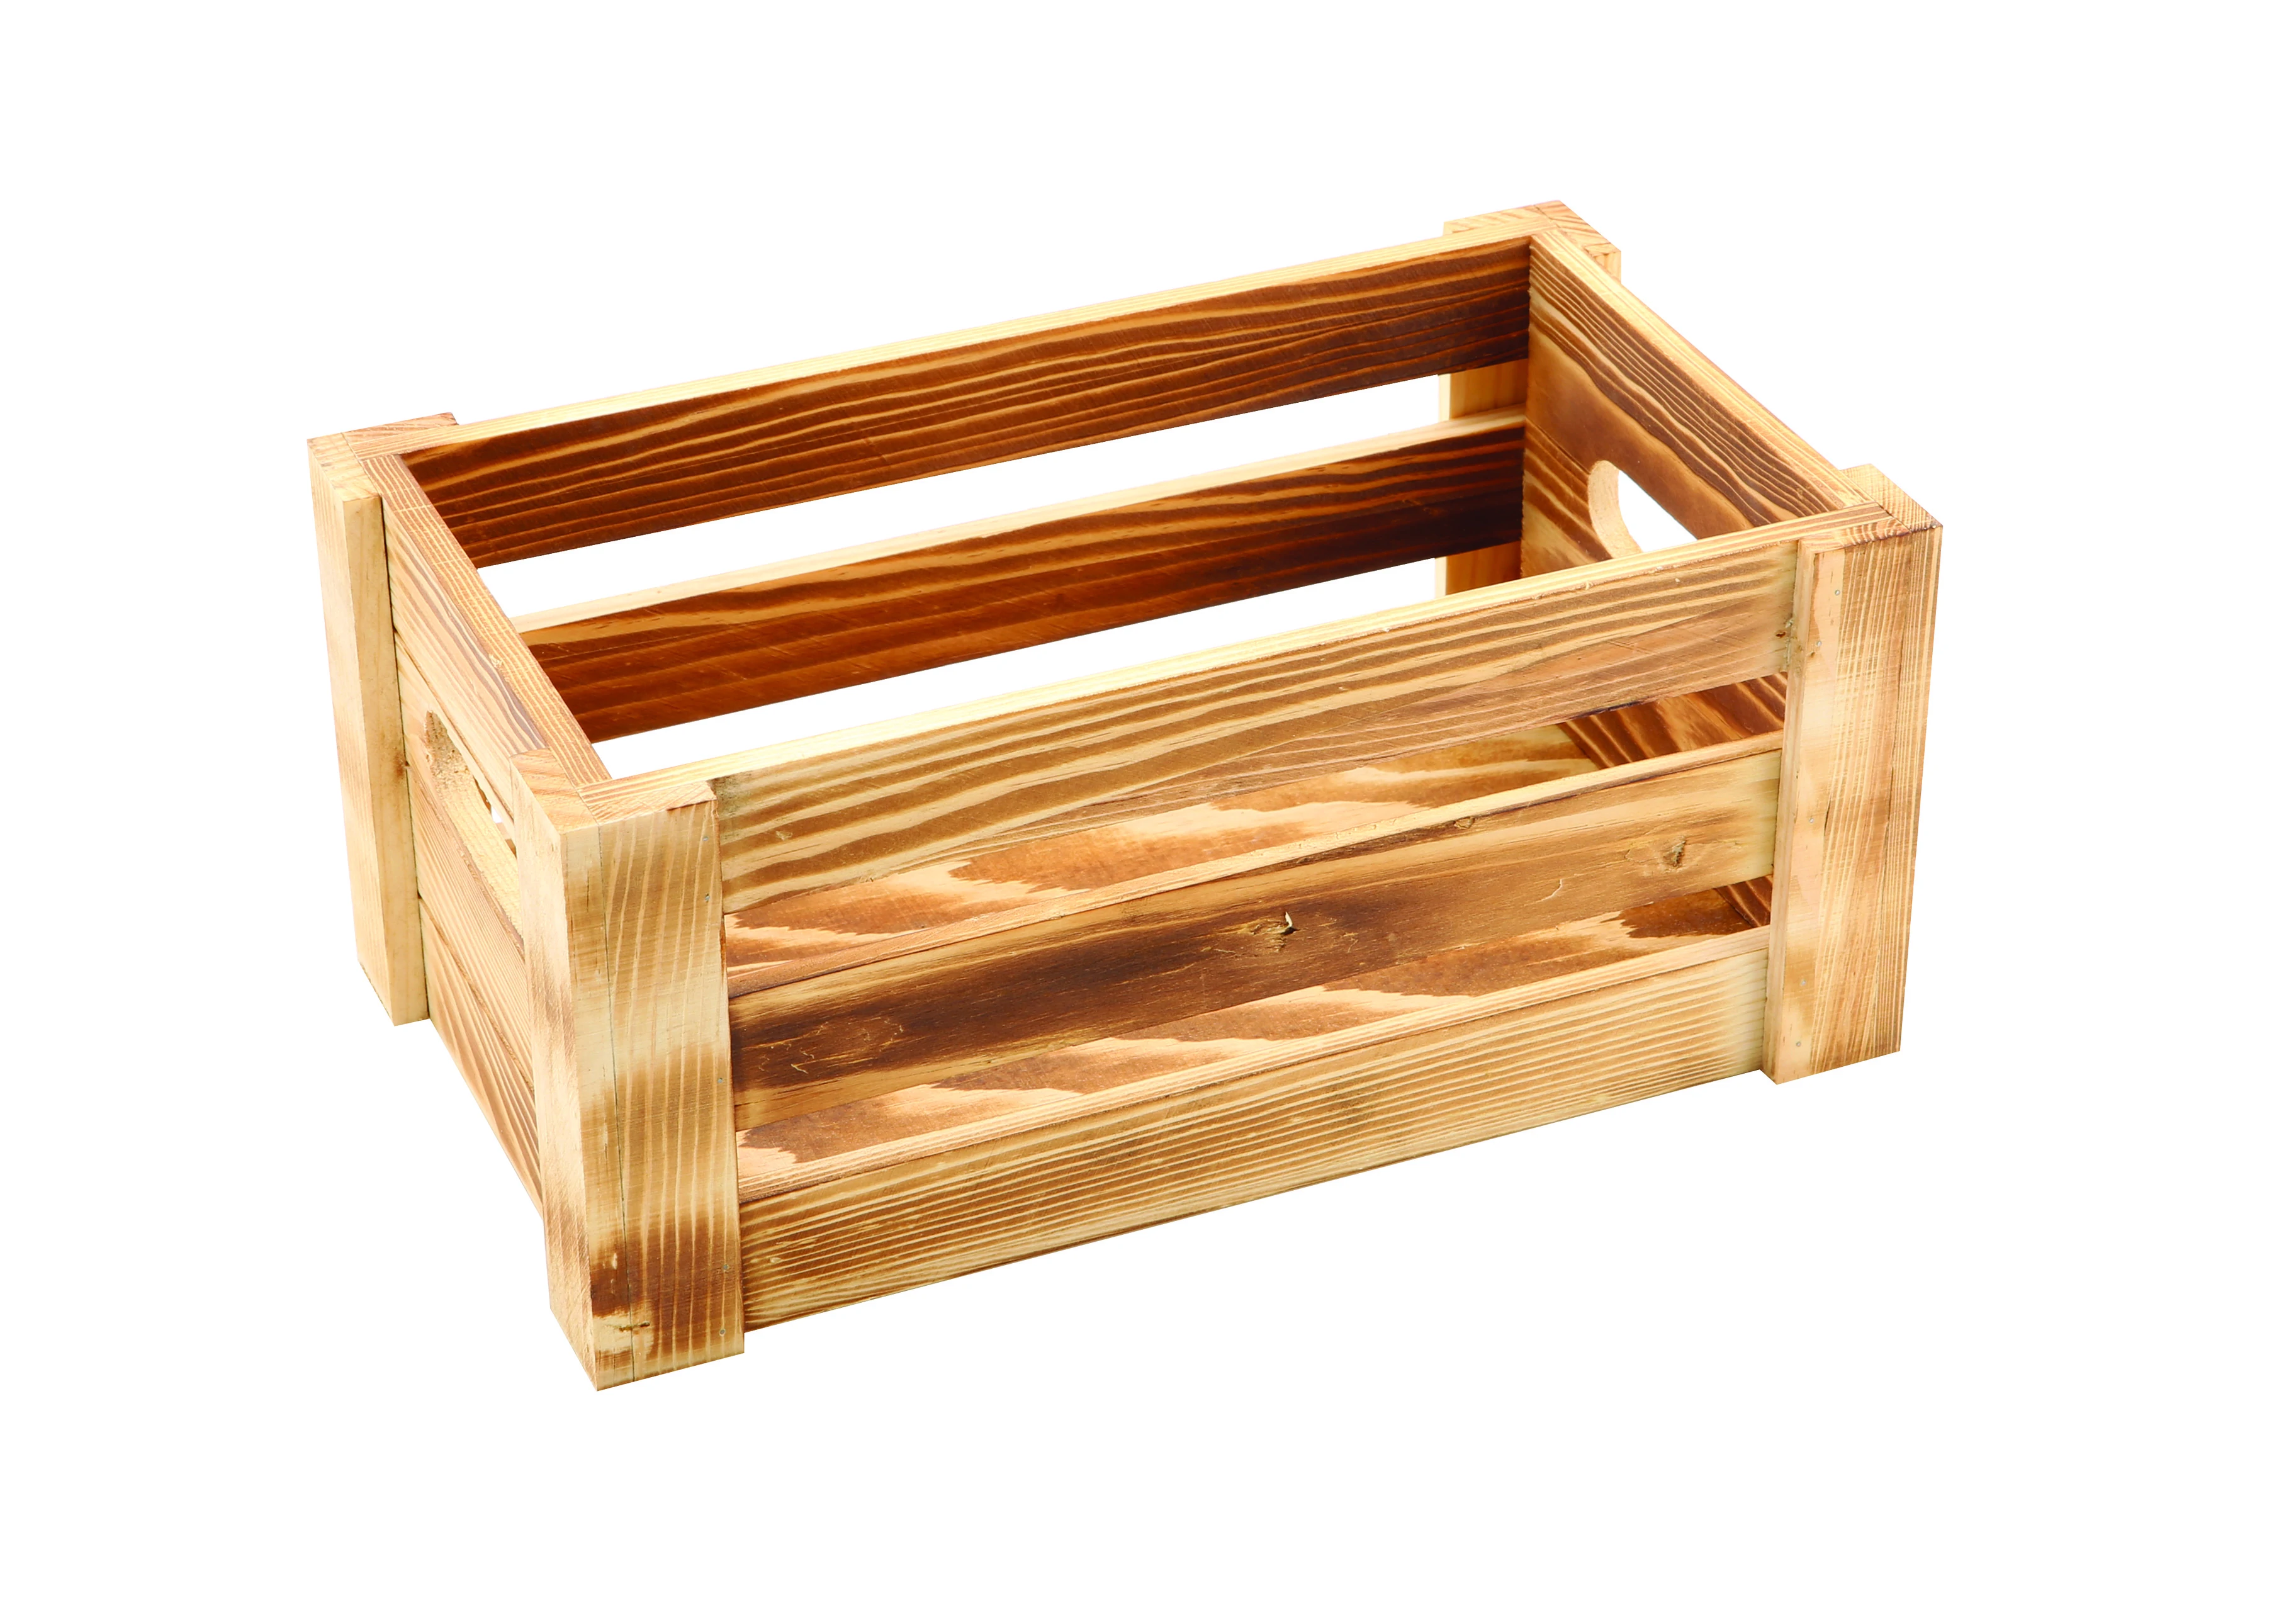 Genware Rustic Wooden Crate 27 x 16 x 12cm